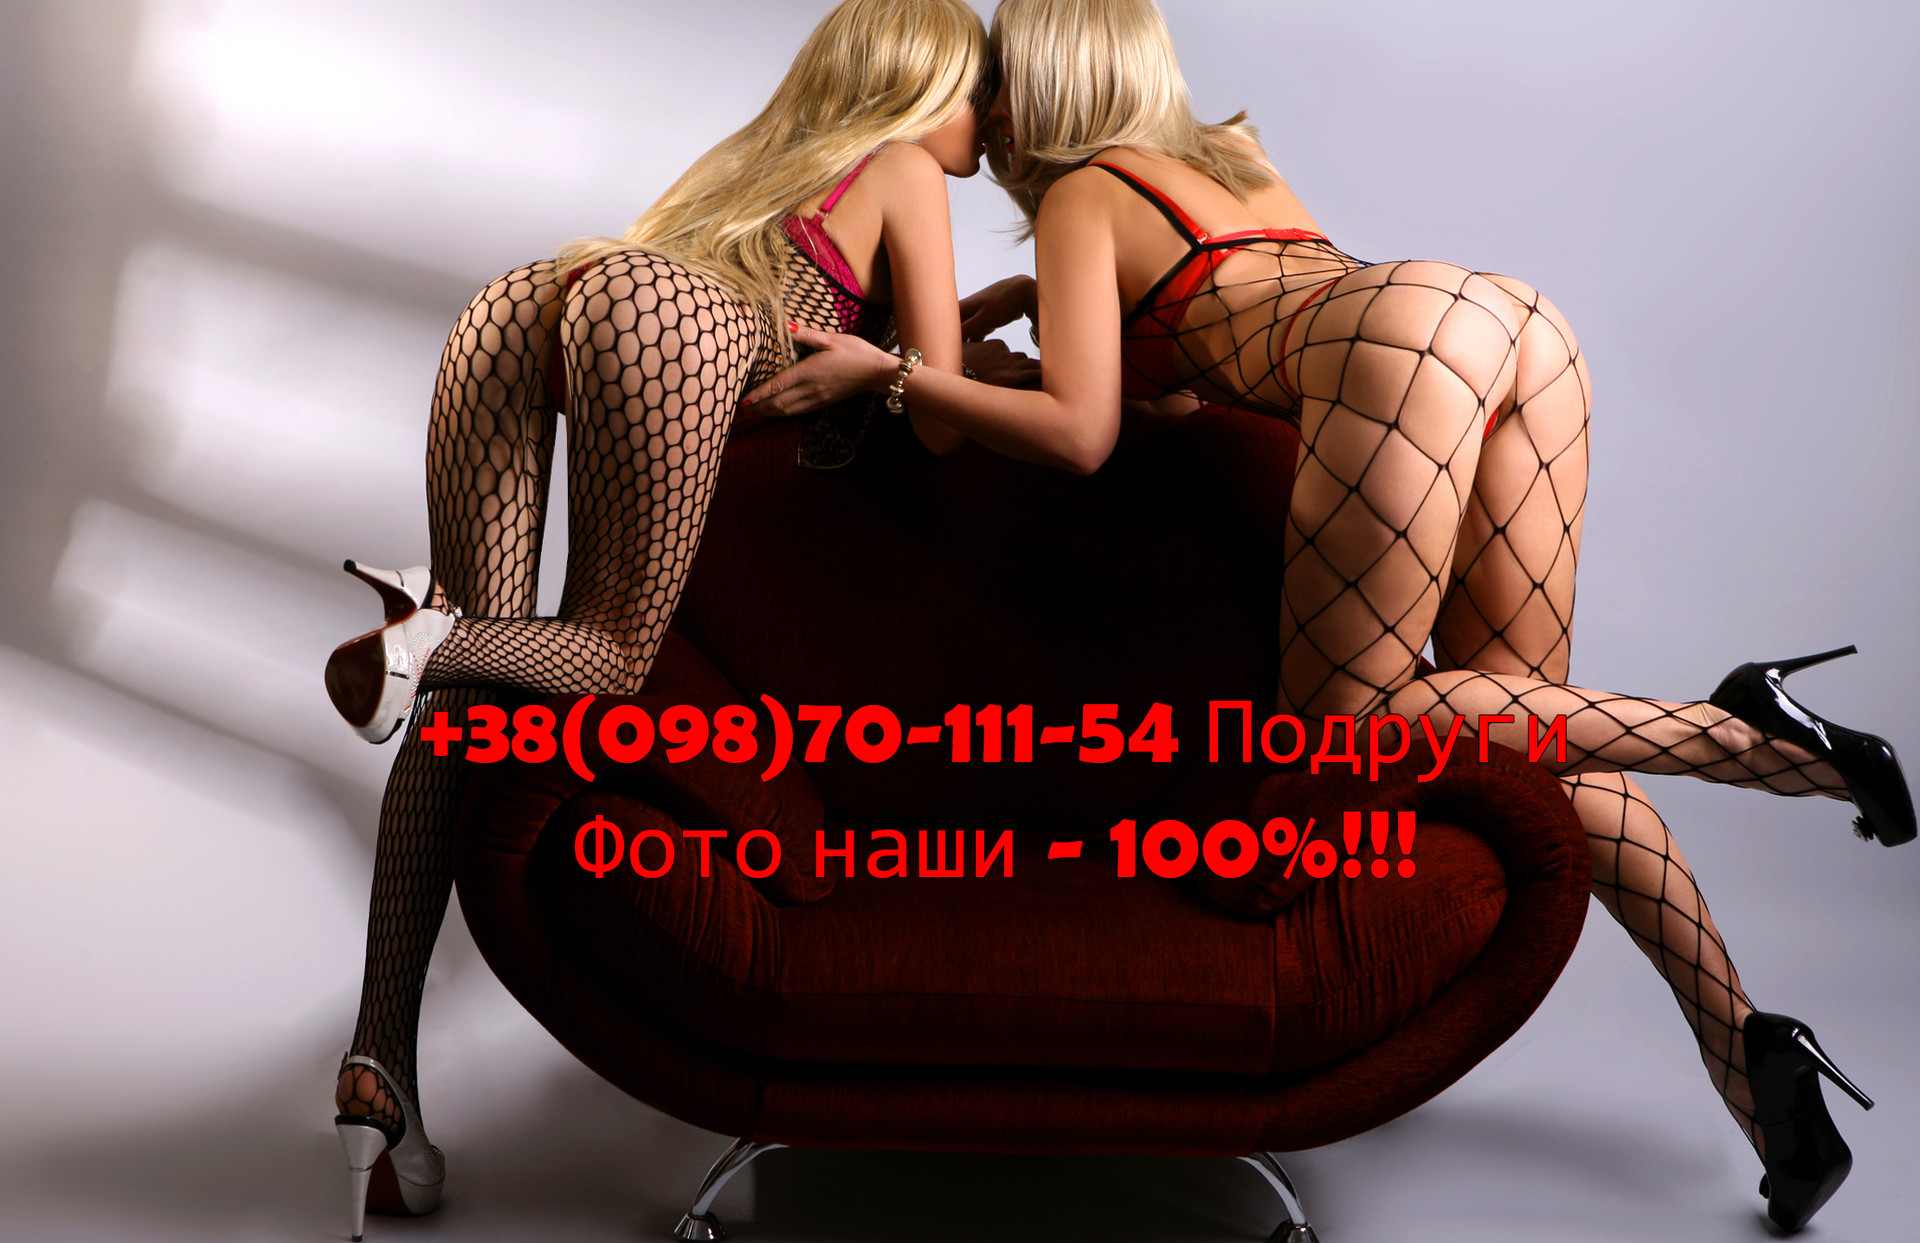 Проститутка Подруги, фото 12, тел: 0987011154. В центре города - Киев